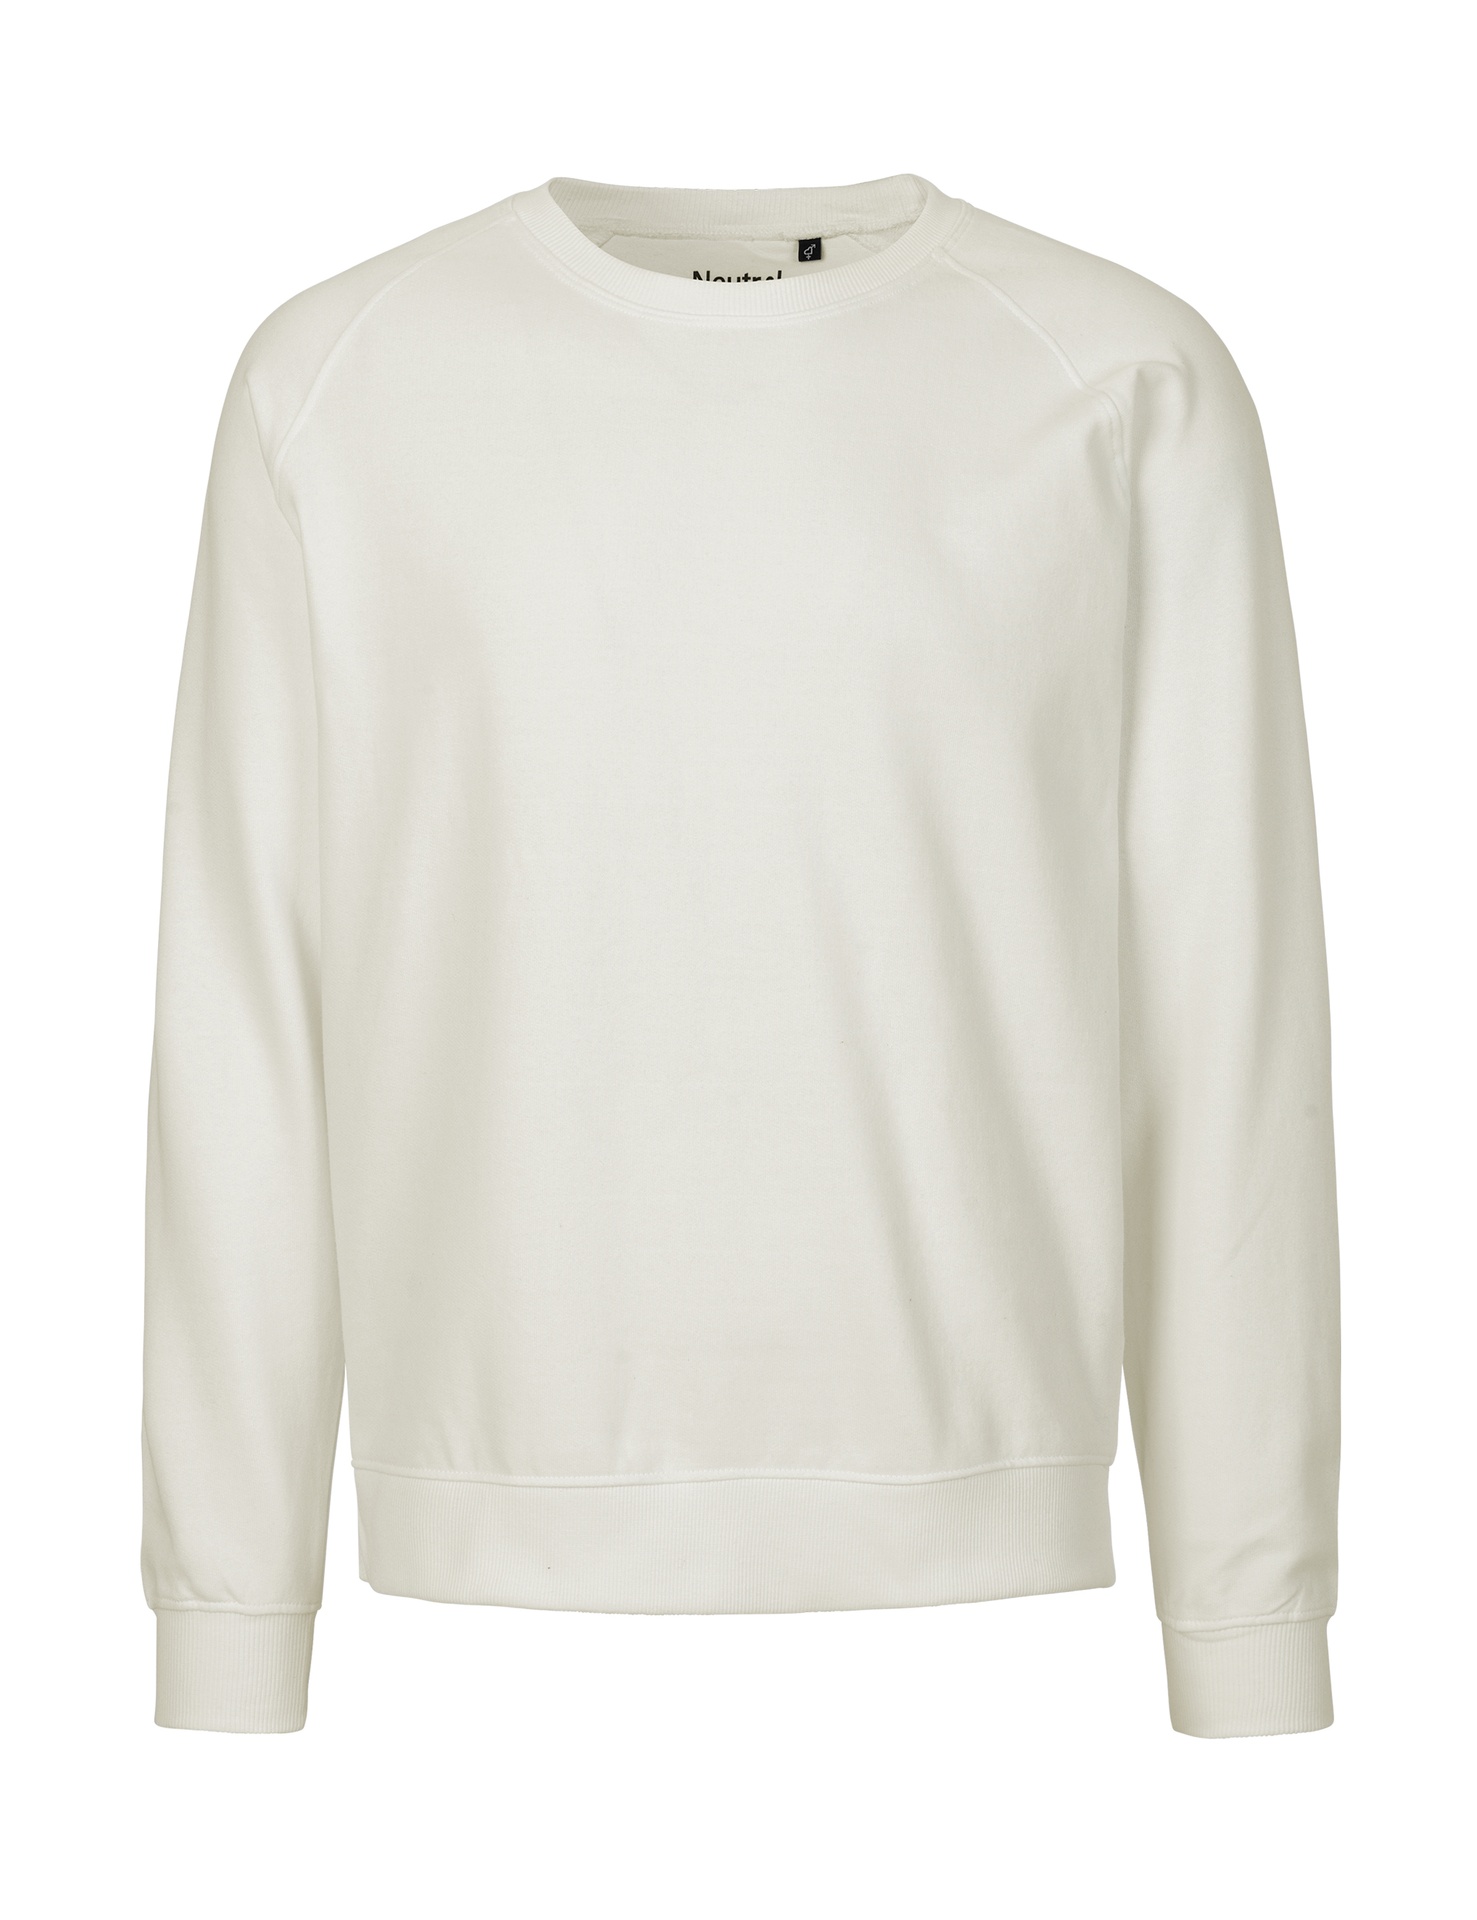 [PR/02651] Unisex Sweatshirt (Nature 00, 5XL)